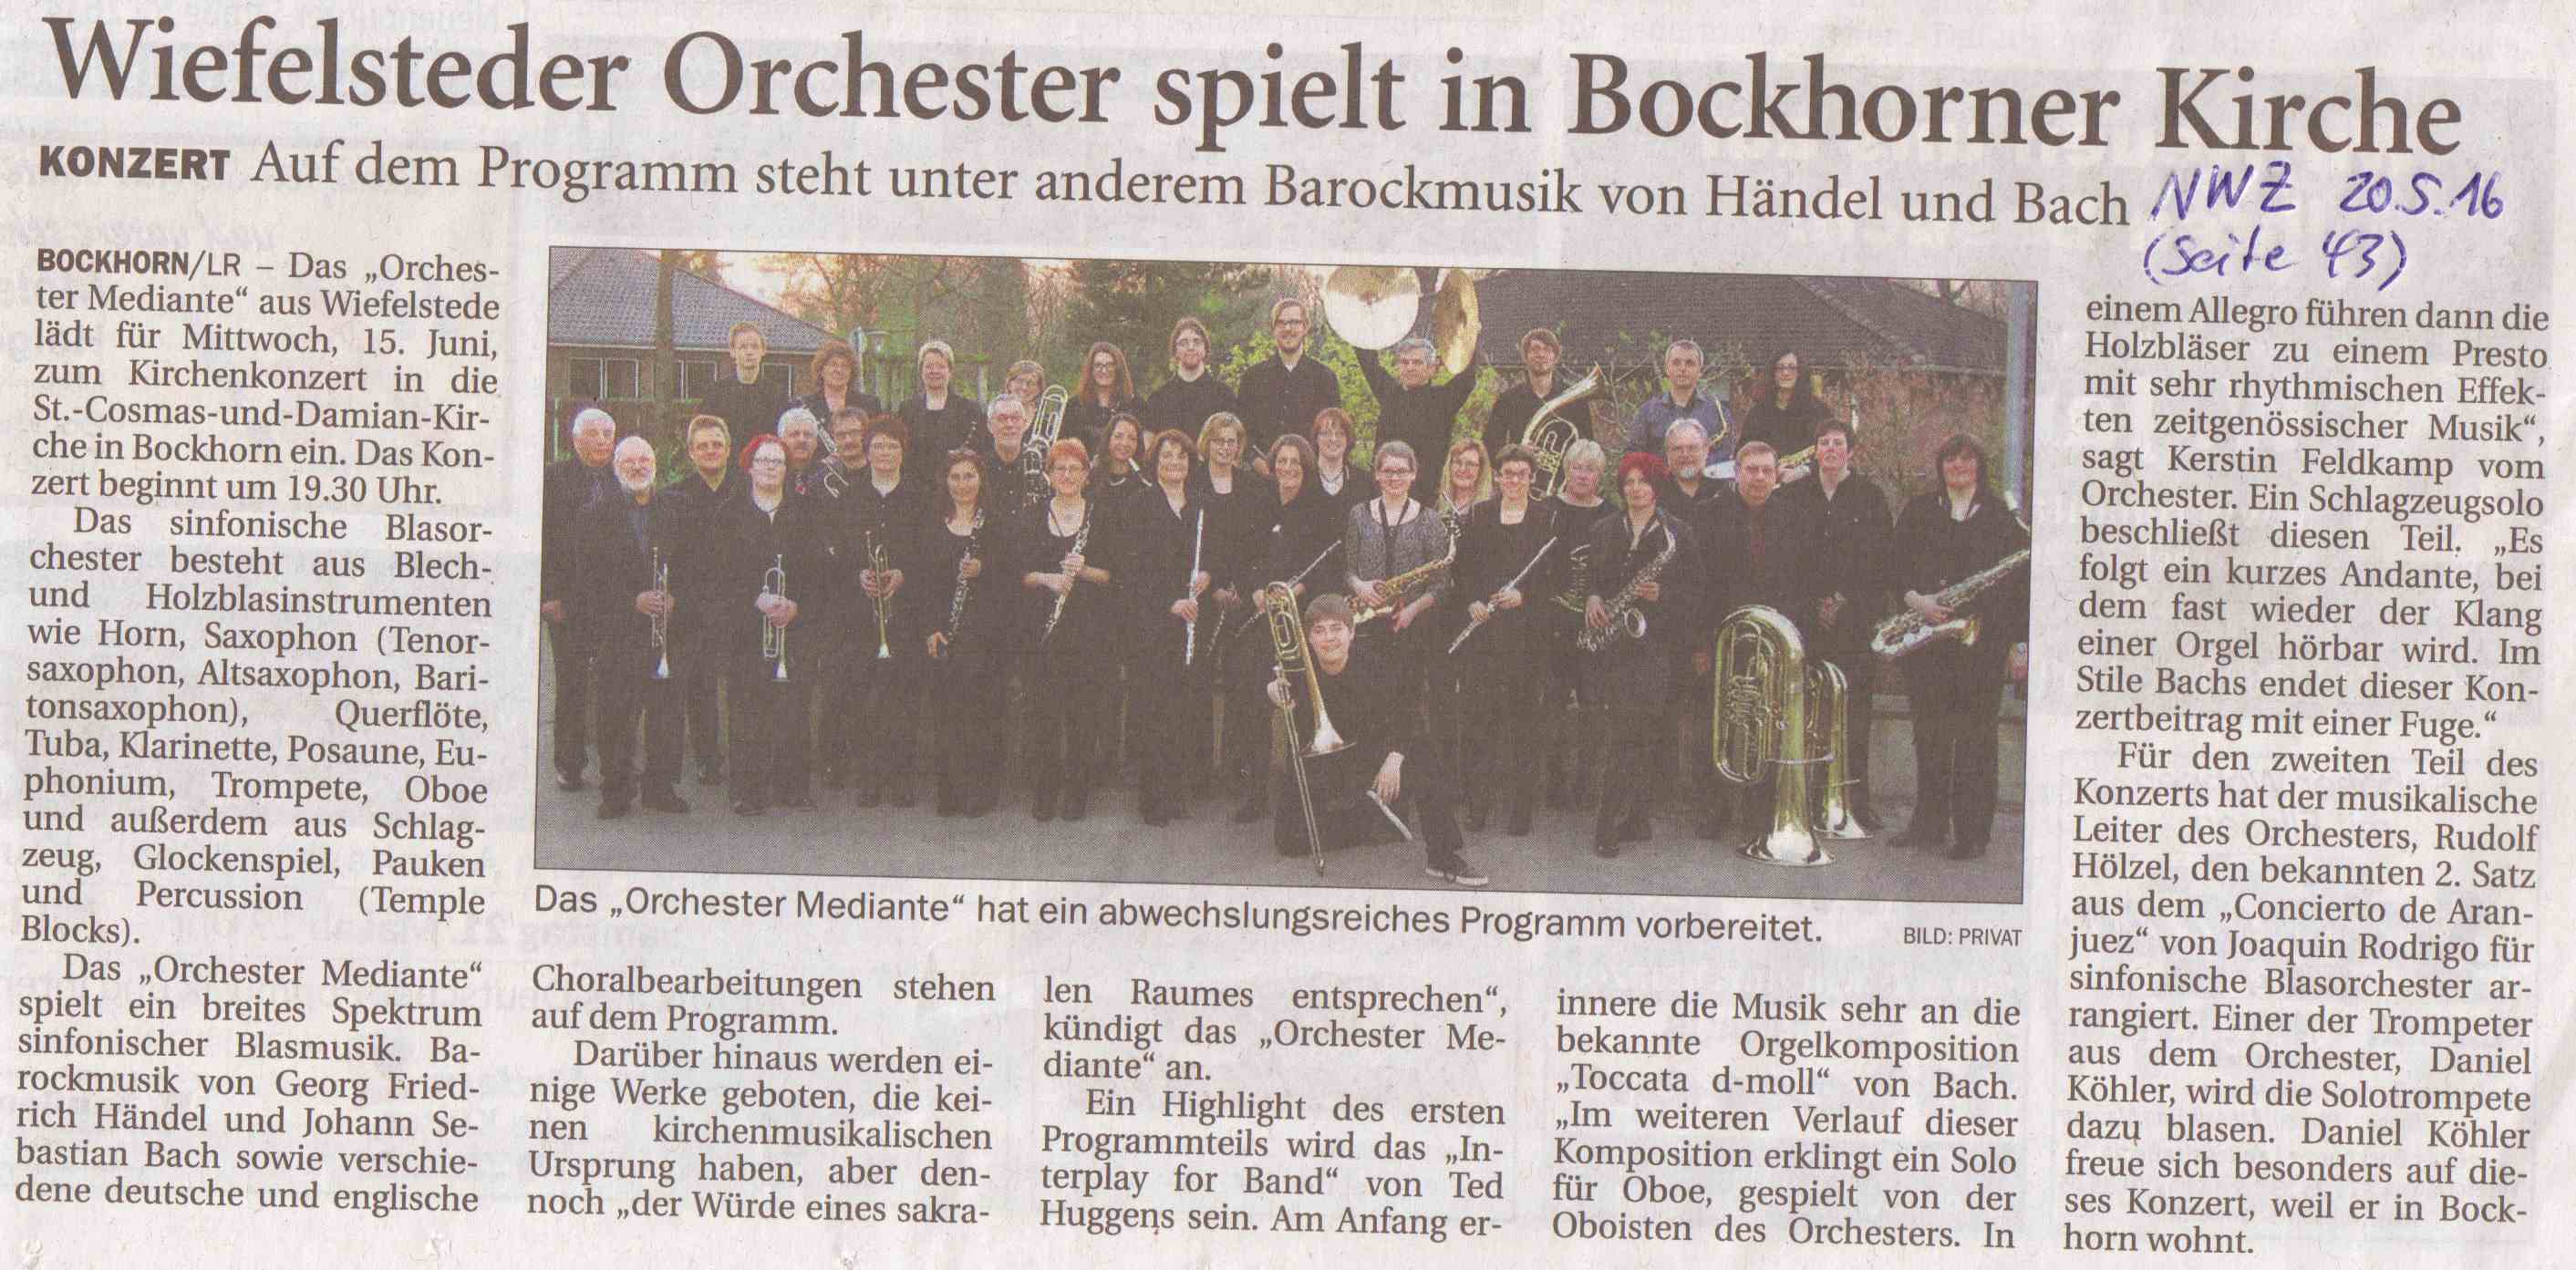 Artikel in der NWZ vom 20.05.2016: Wiefelsteder Orchester spielt in Bockhorner Kirche am 15. Juni 2016 um 19:30 Uhr